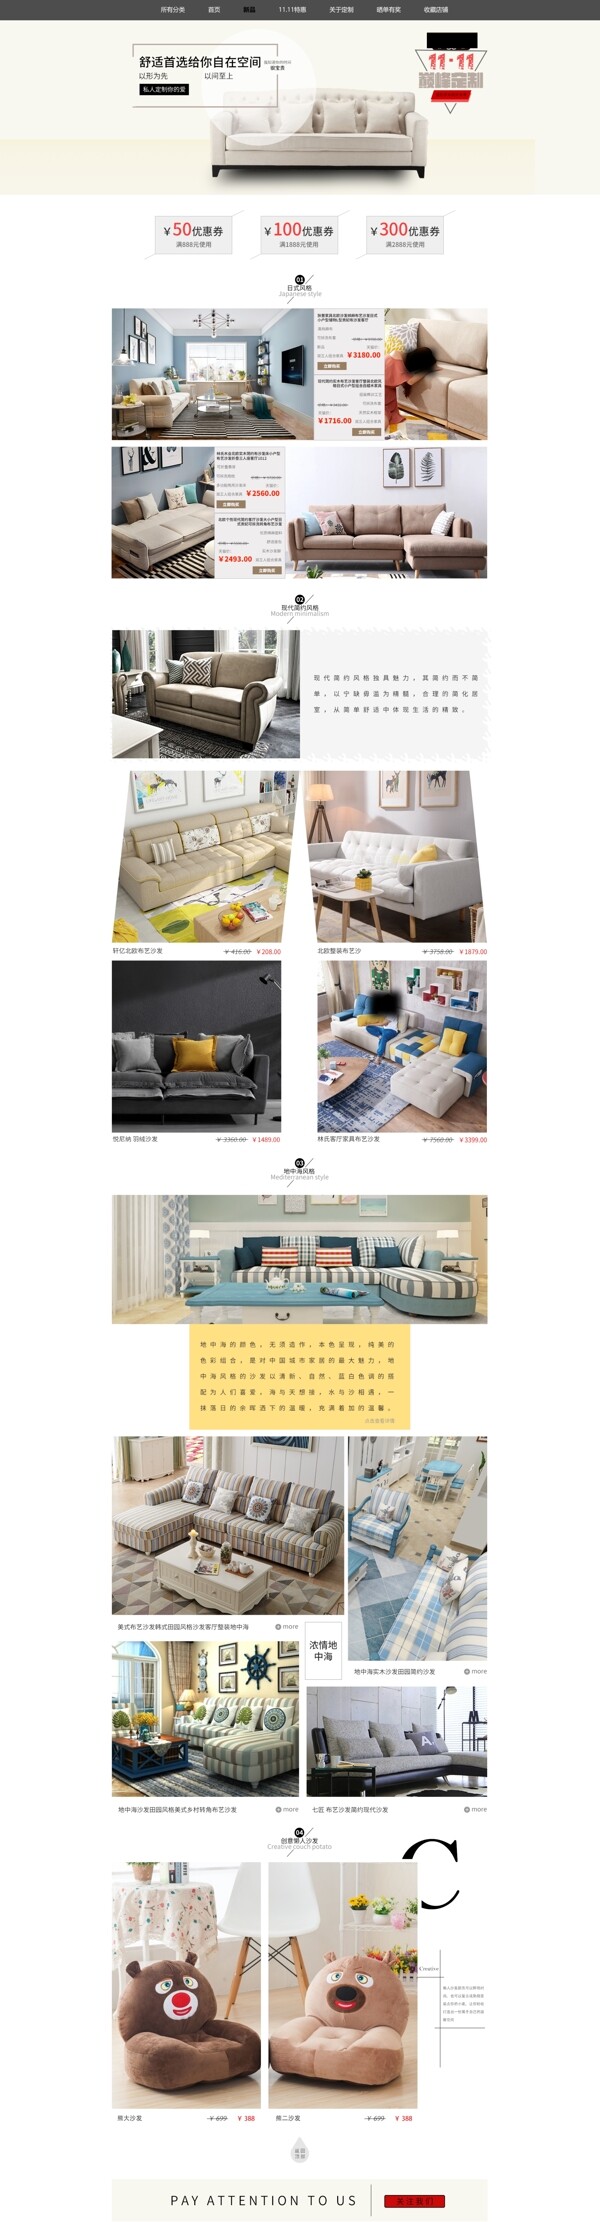 沙发专题页设计模板